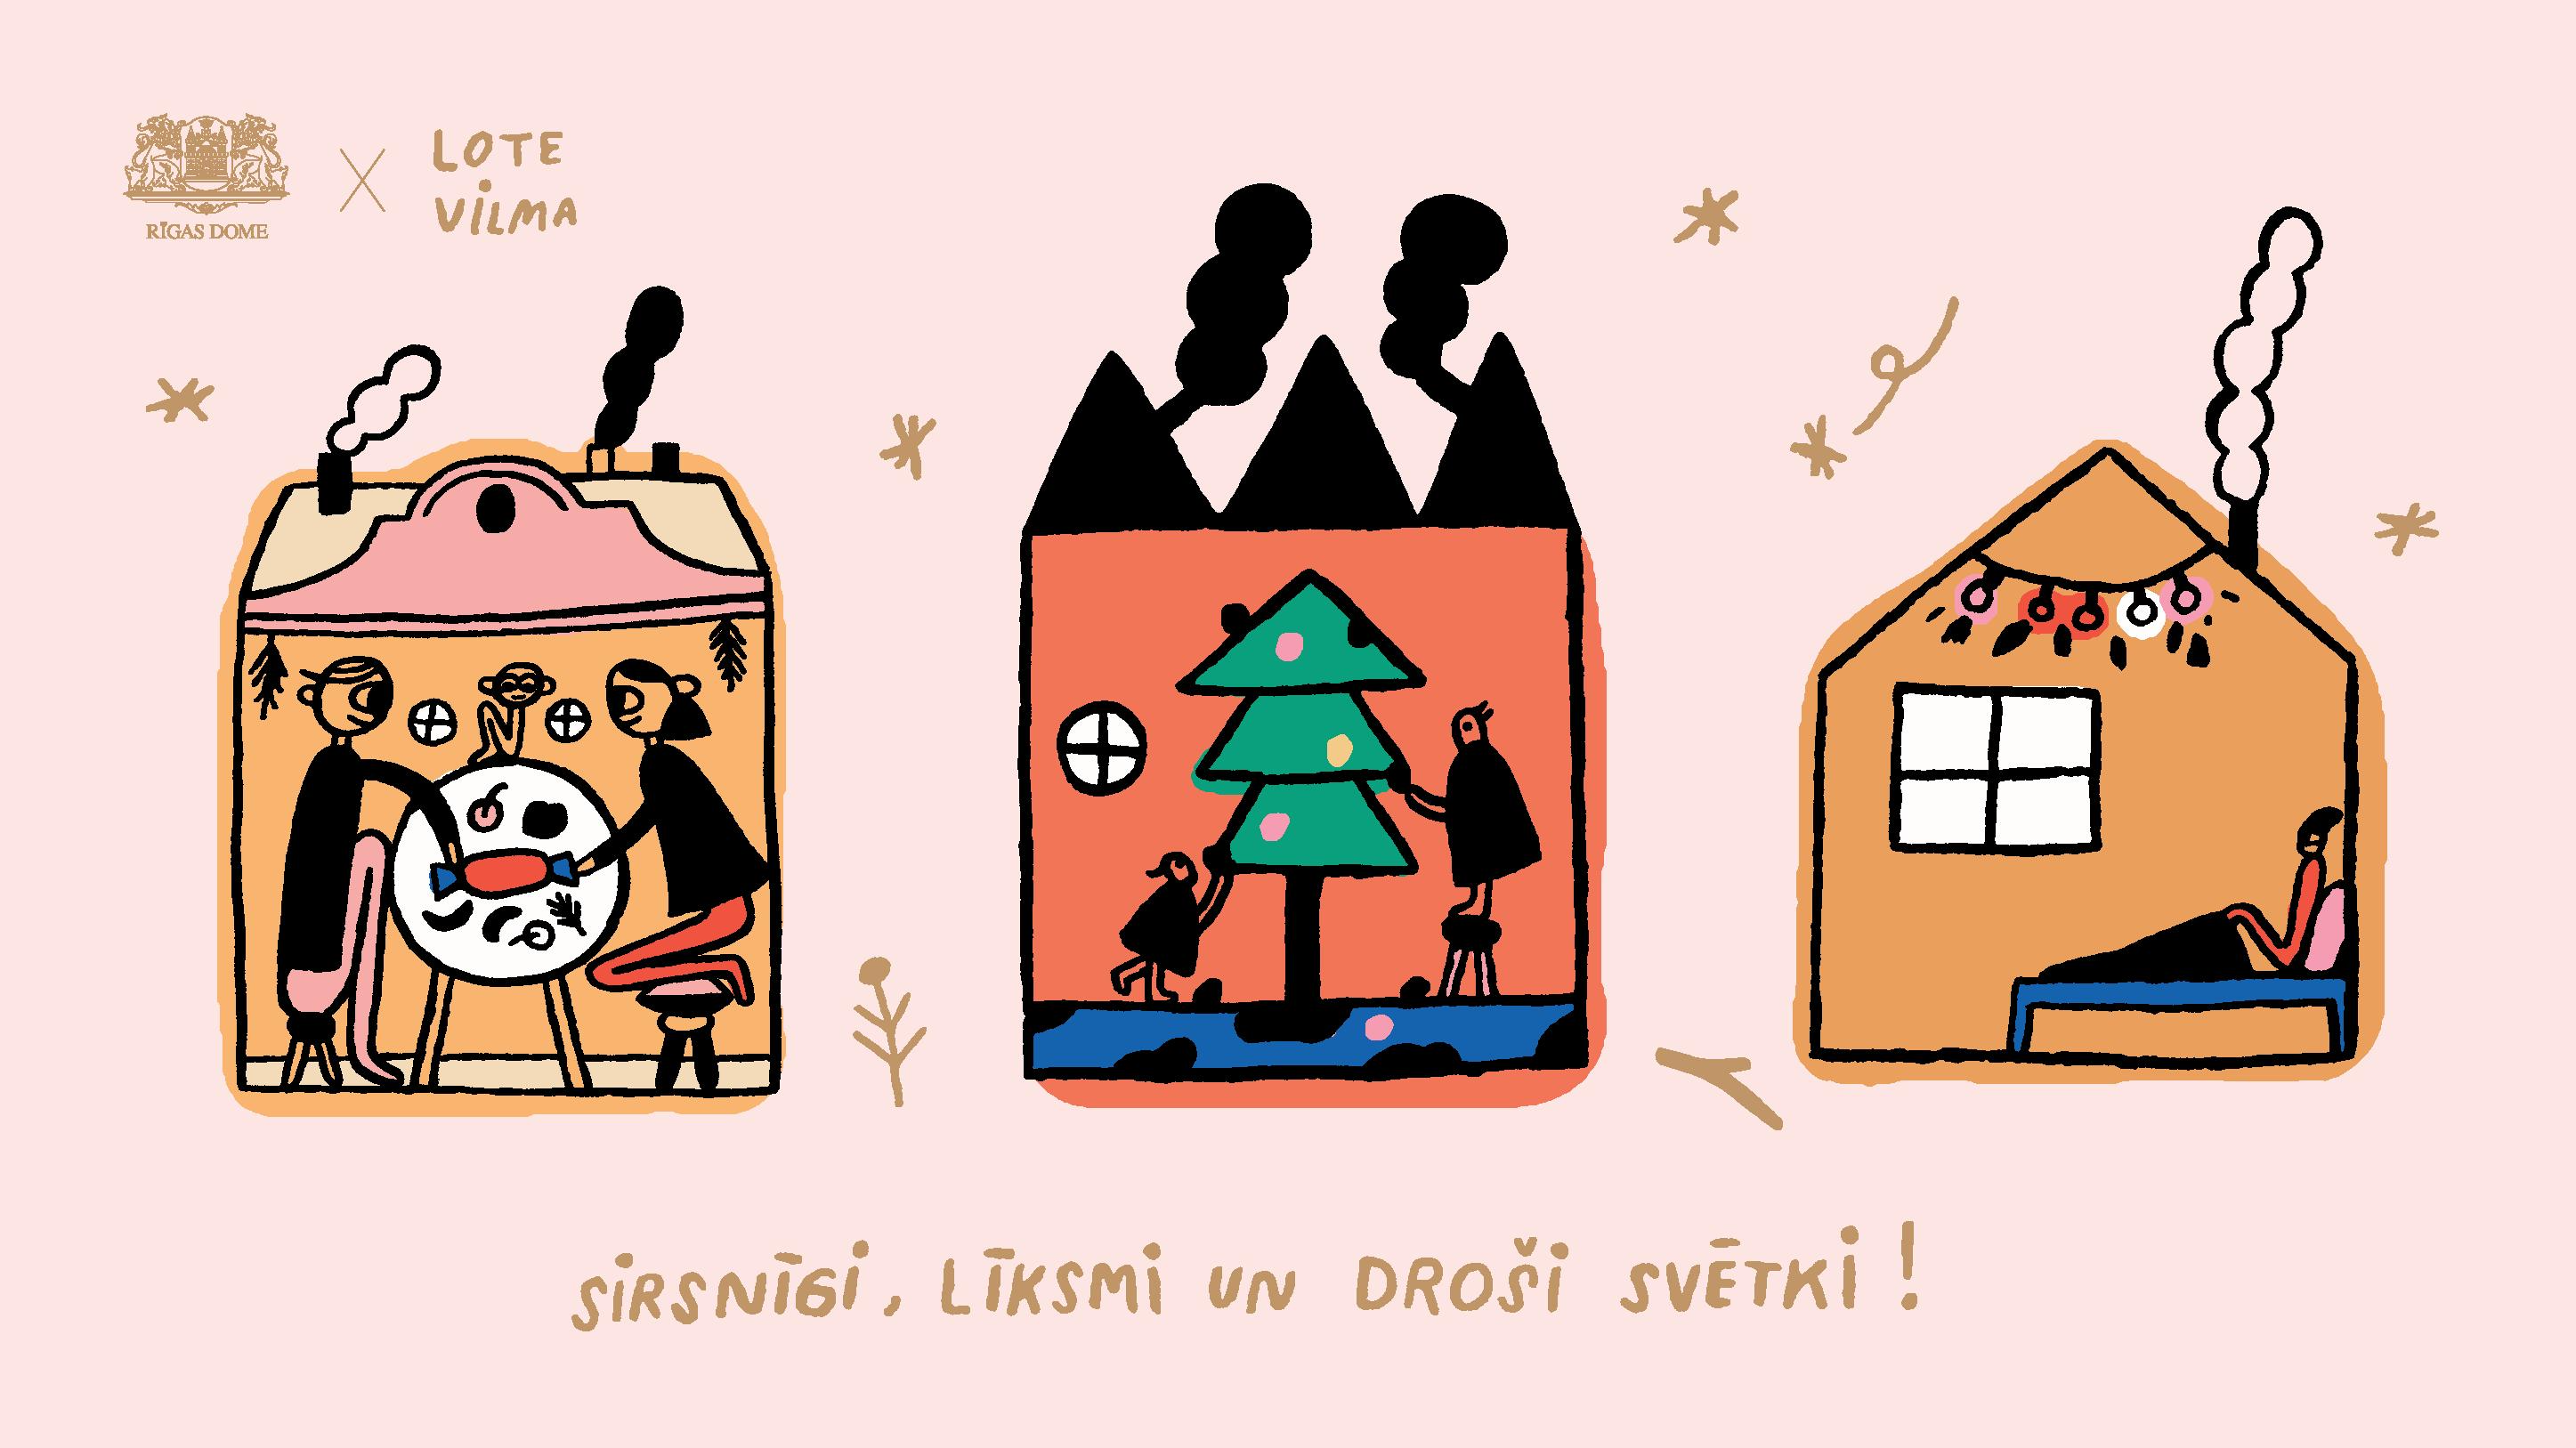 Ceturtajā adventē Rīgā iedzīvotājus aicina skatīties koncertus tiešsaistē un doties pastaigā pa svētku noskaņā rotātiem parkiem apkaimēs